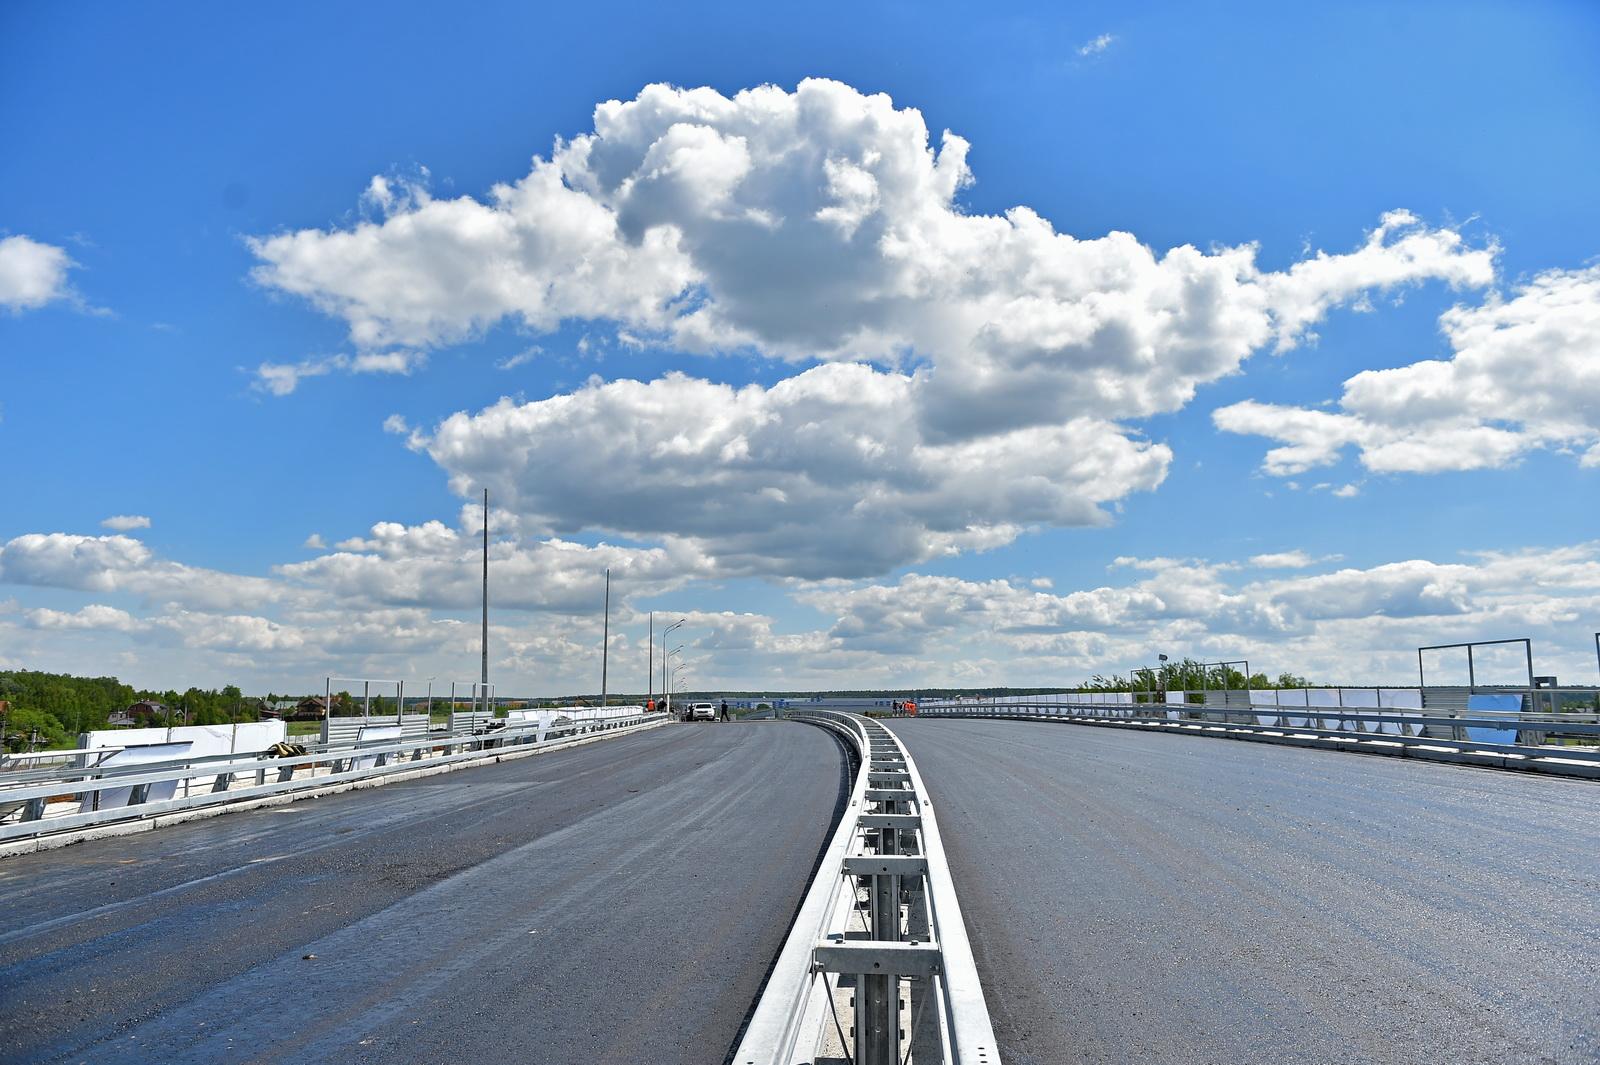 Развязку построят на пересечении двух шоссе – Филимонковского и Ракитки